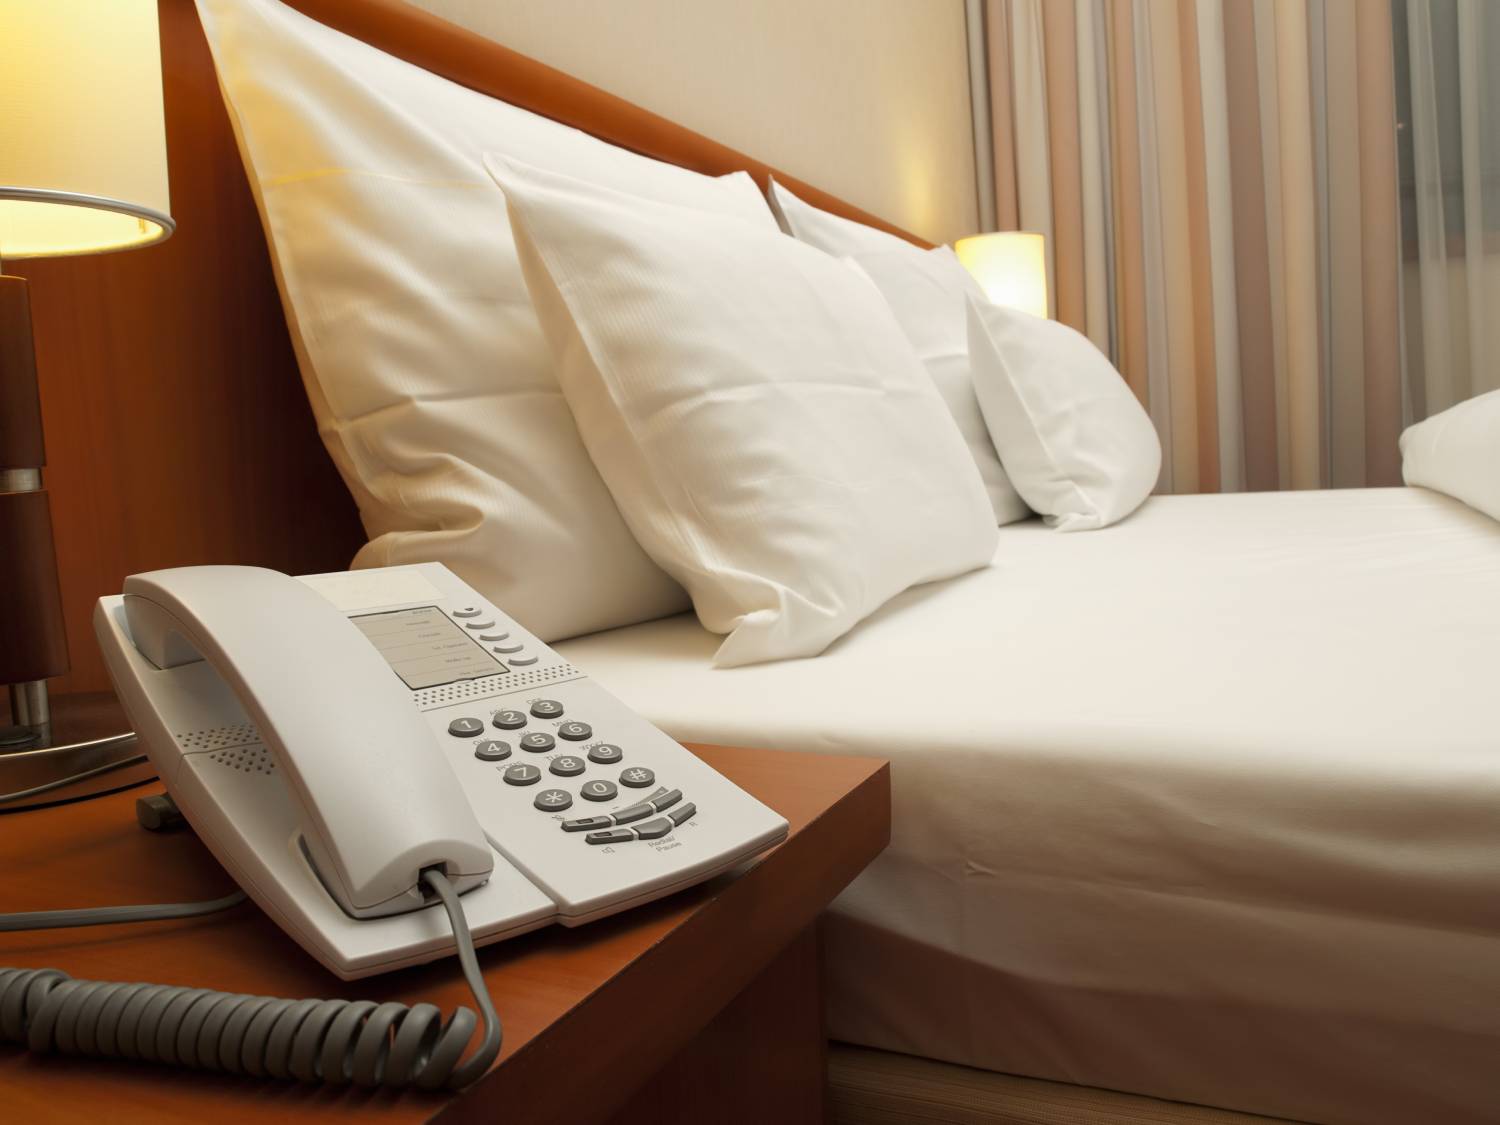 Teléfonos para habitaciones de hotel